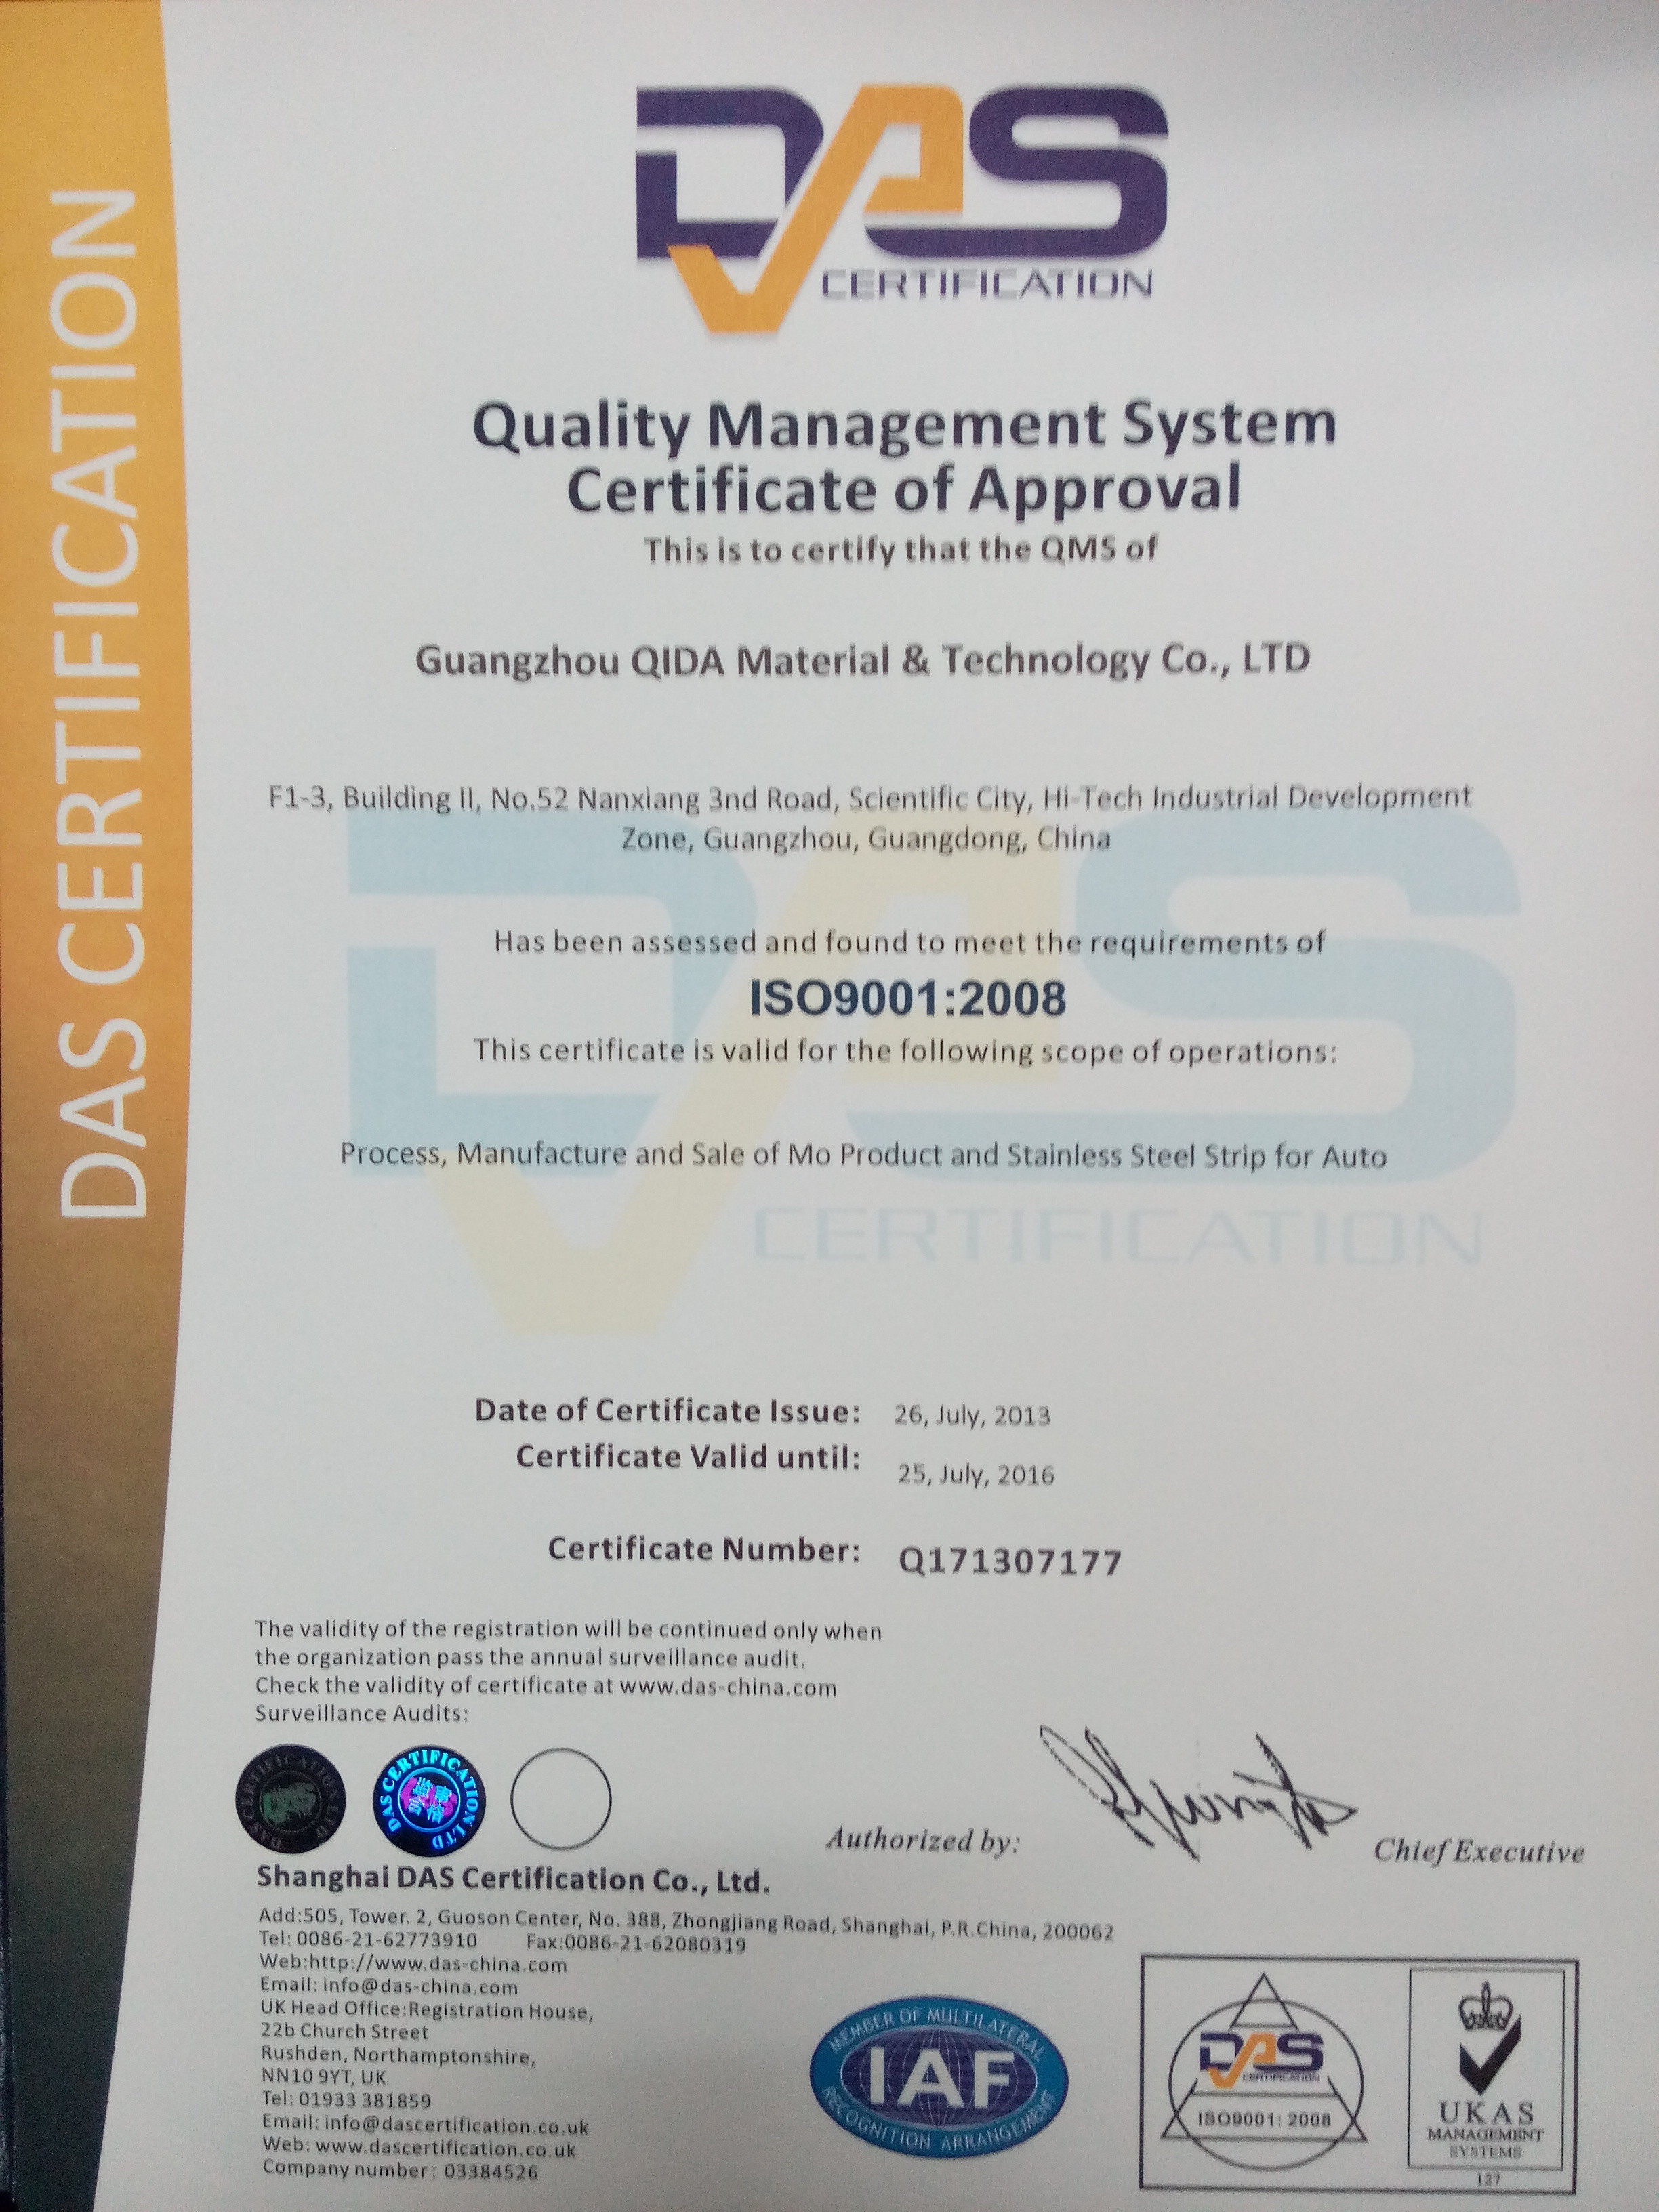 Guangzhou QIDA Material & Technology Co., Ltd Certifications